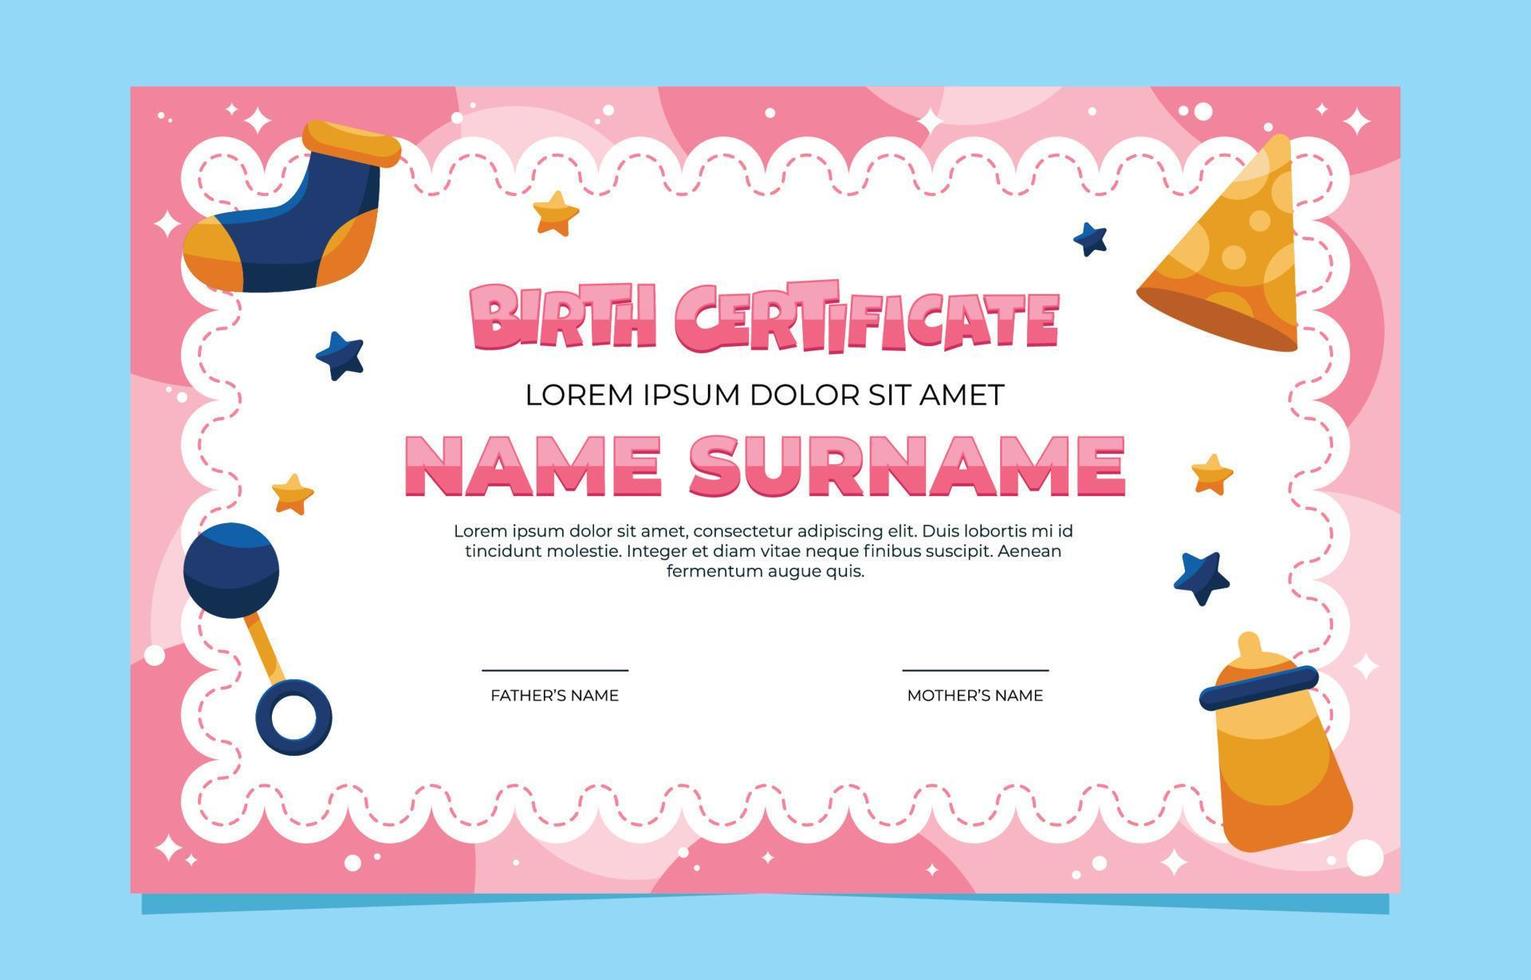 plantilla de certificado del día de nacimiento vector